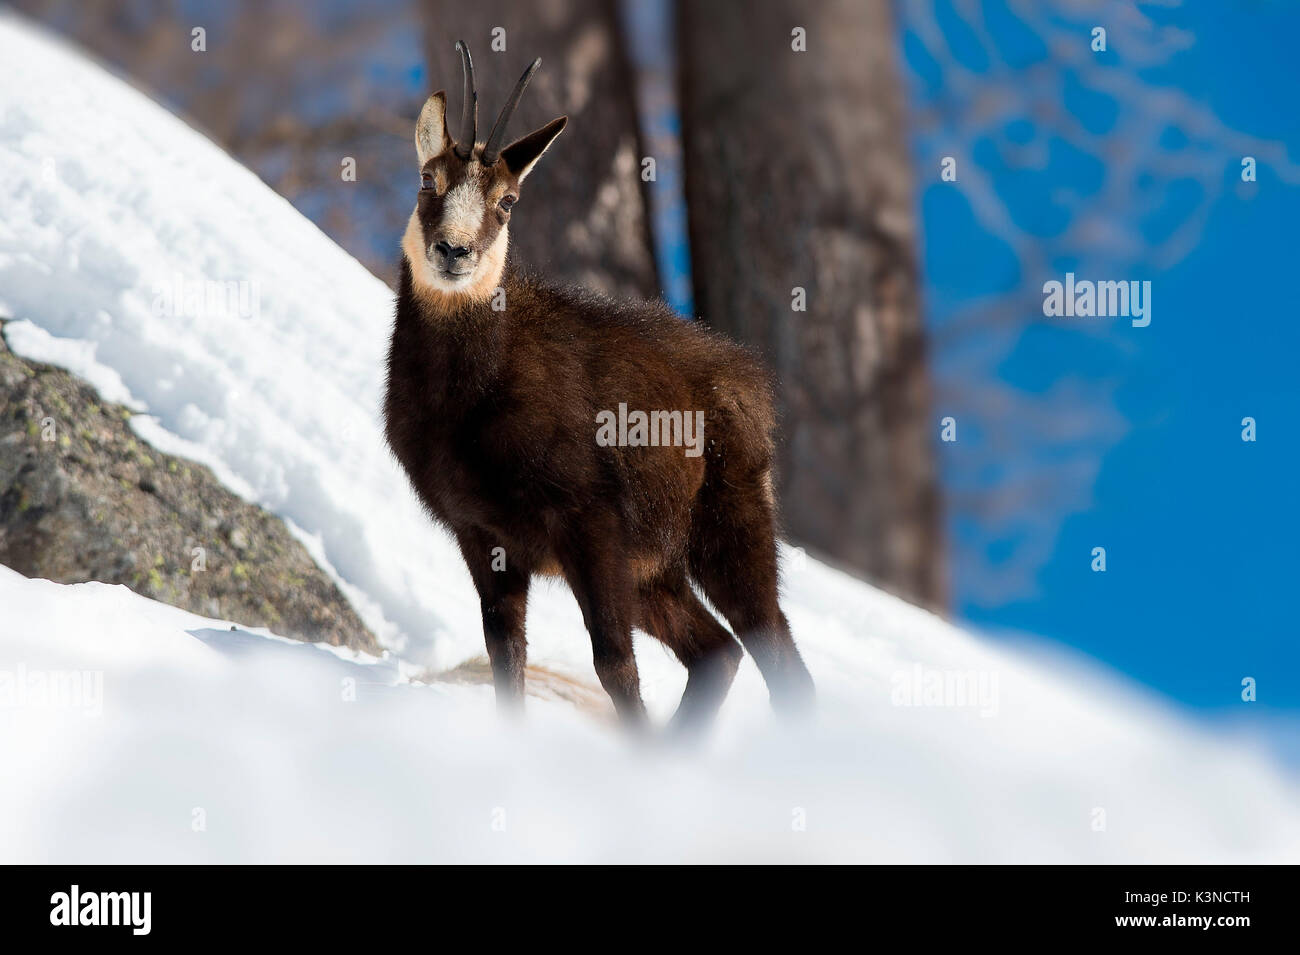 Ceresole Reale,Gran Paradiso Park,Piemonte Italie un jeune chamois photographié alors qu'elle cherchait de la nourriture dans la neige. Banque D'Images